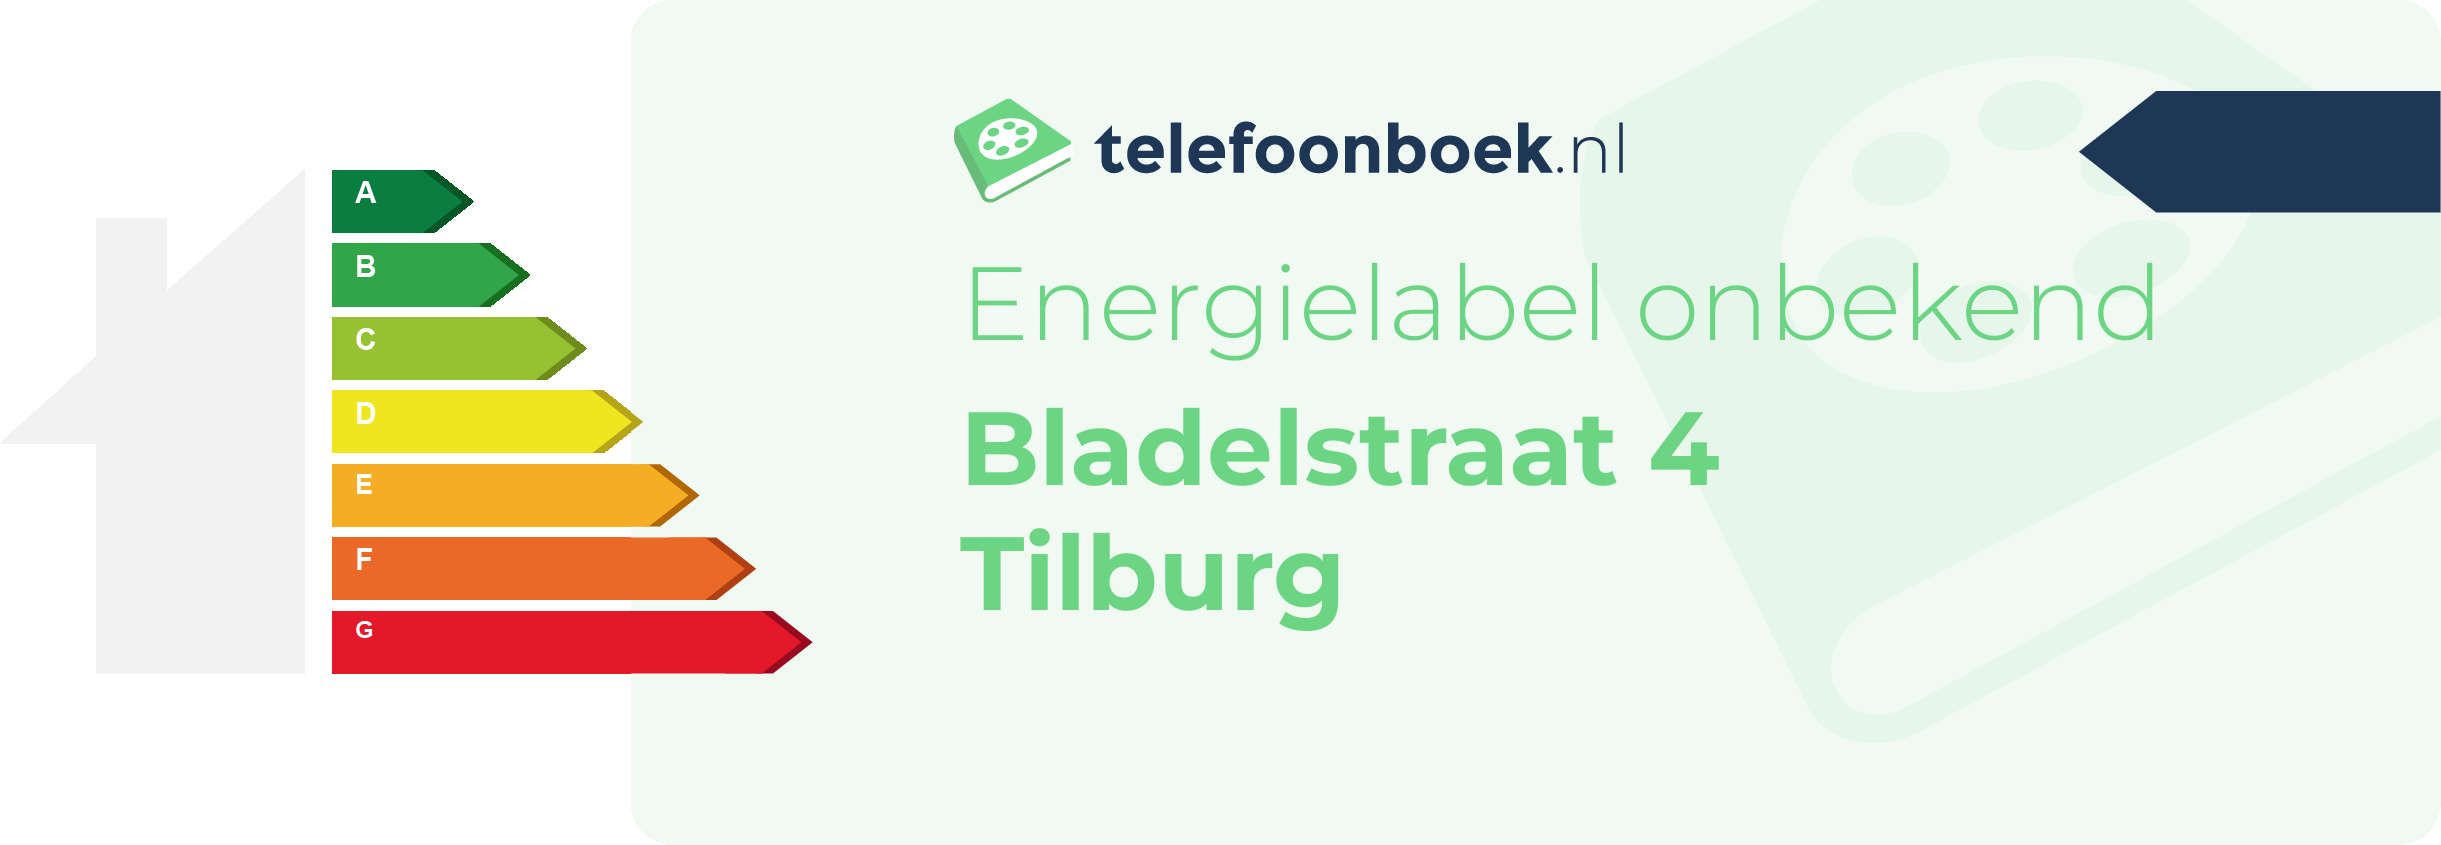 Energielabel Bladelstraat 4 Tilburg